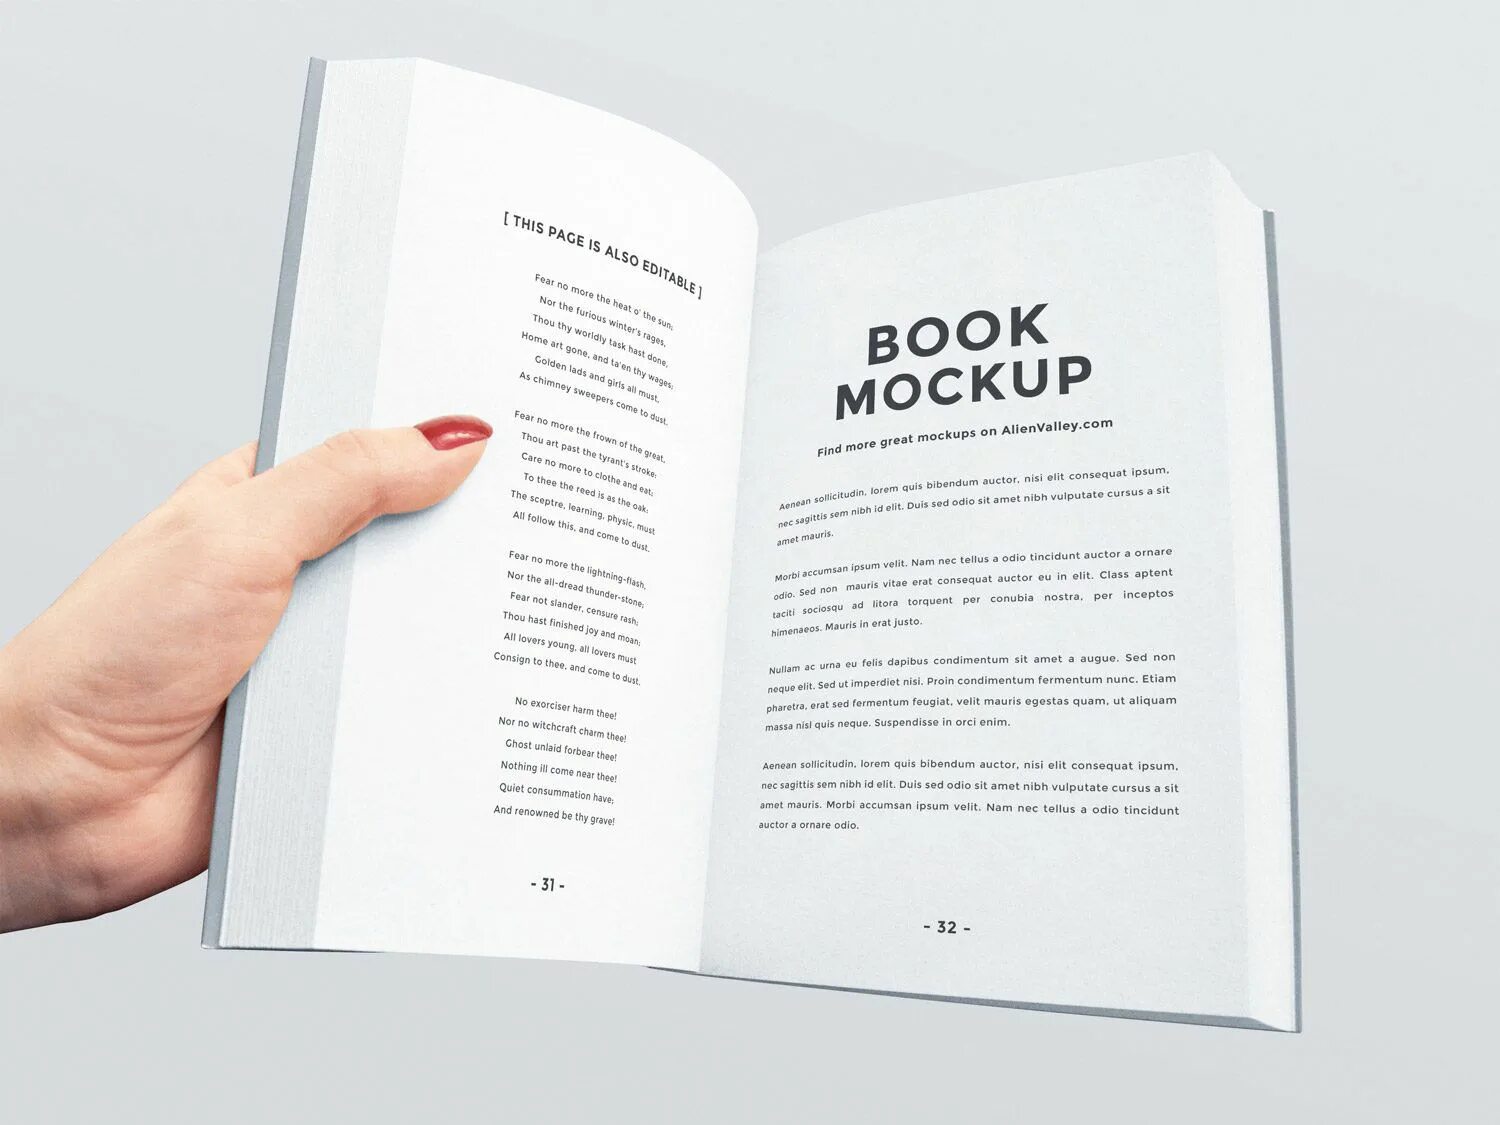 Книга ис читать. Верстка книги. Мокап книги. Дизайн обложки книги раскрытая. Открытая книга Mockup.